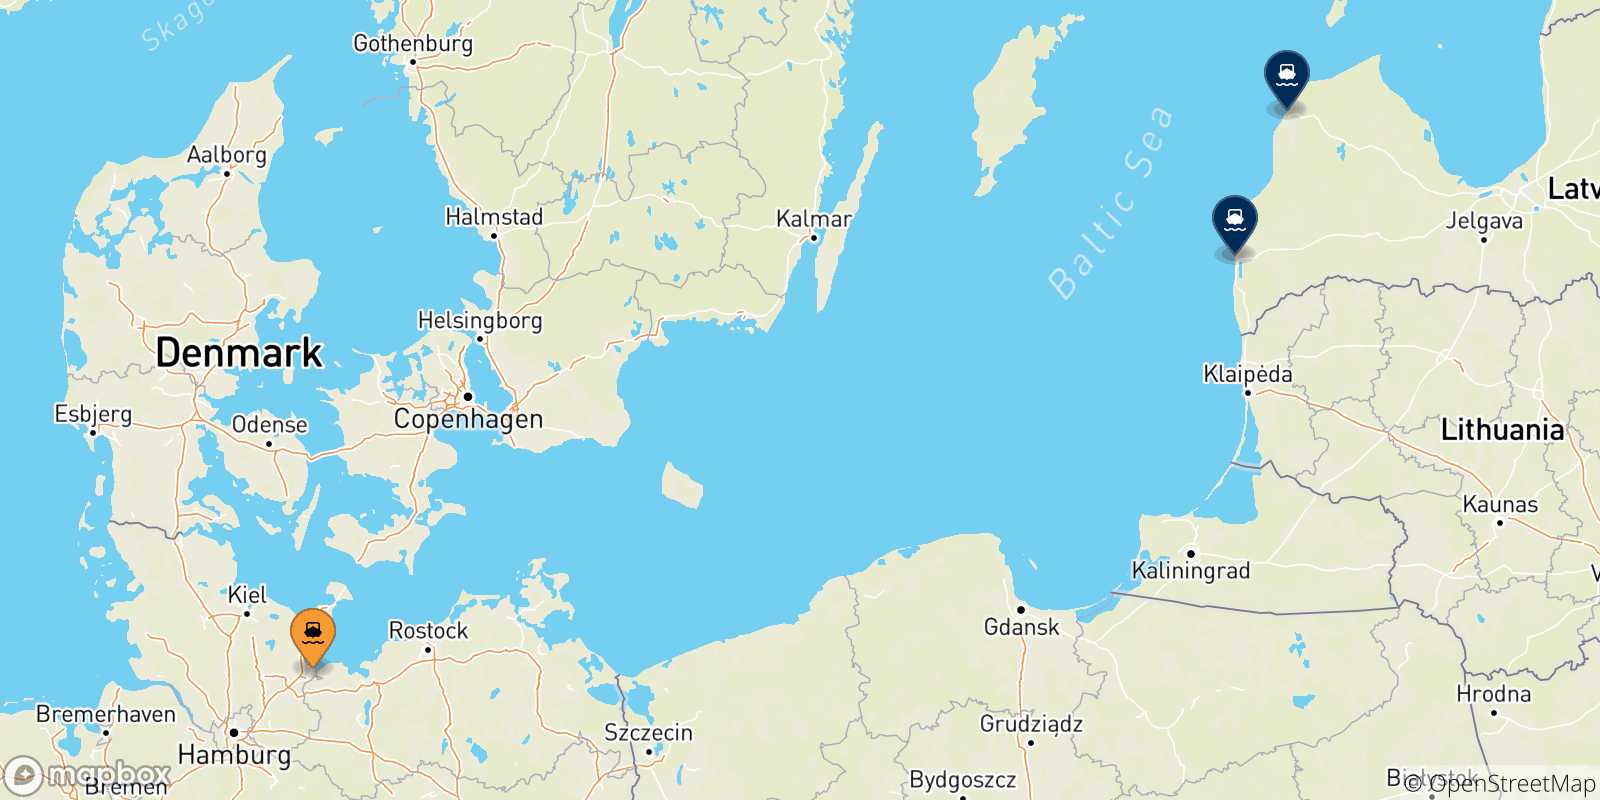 Mappa delle possibili rotte tra la Germania e la Lettonia